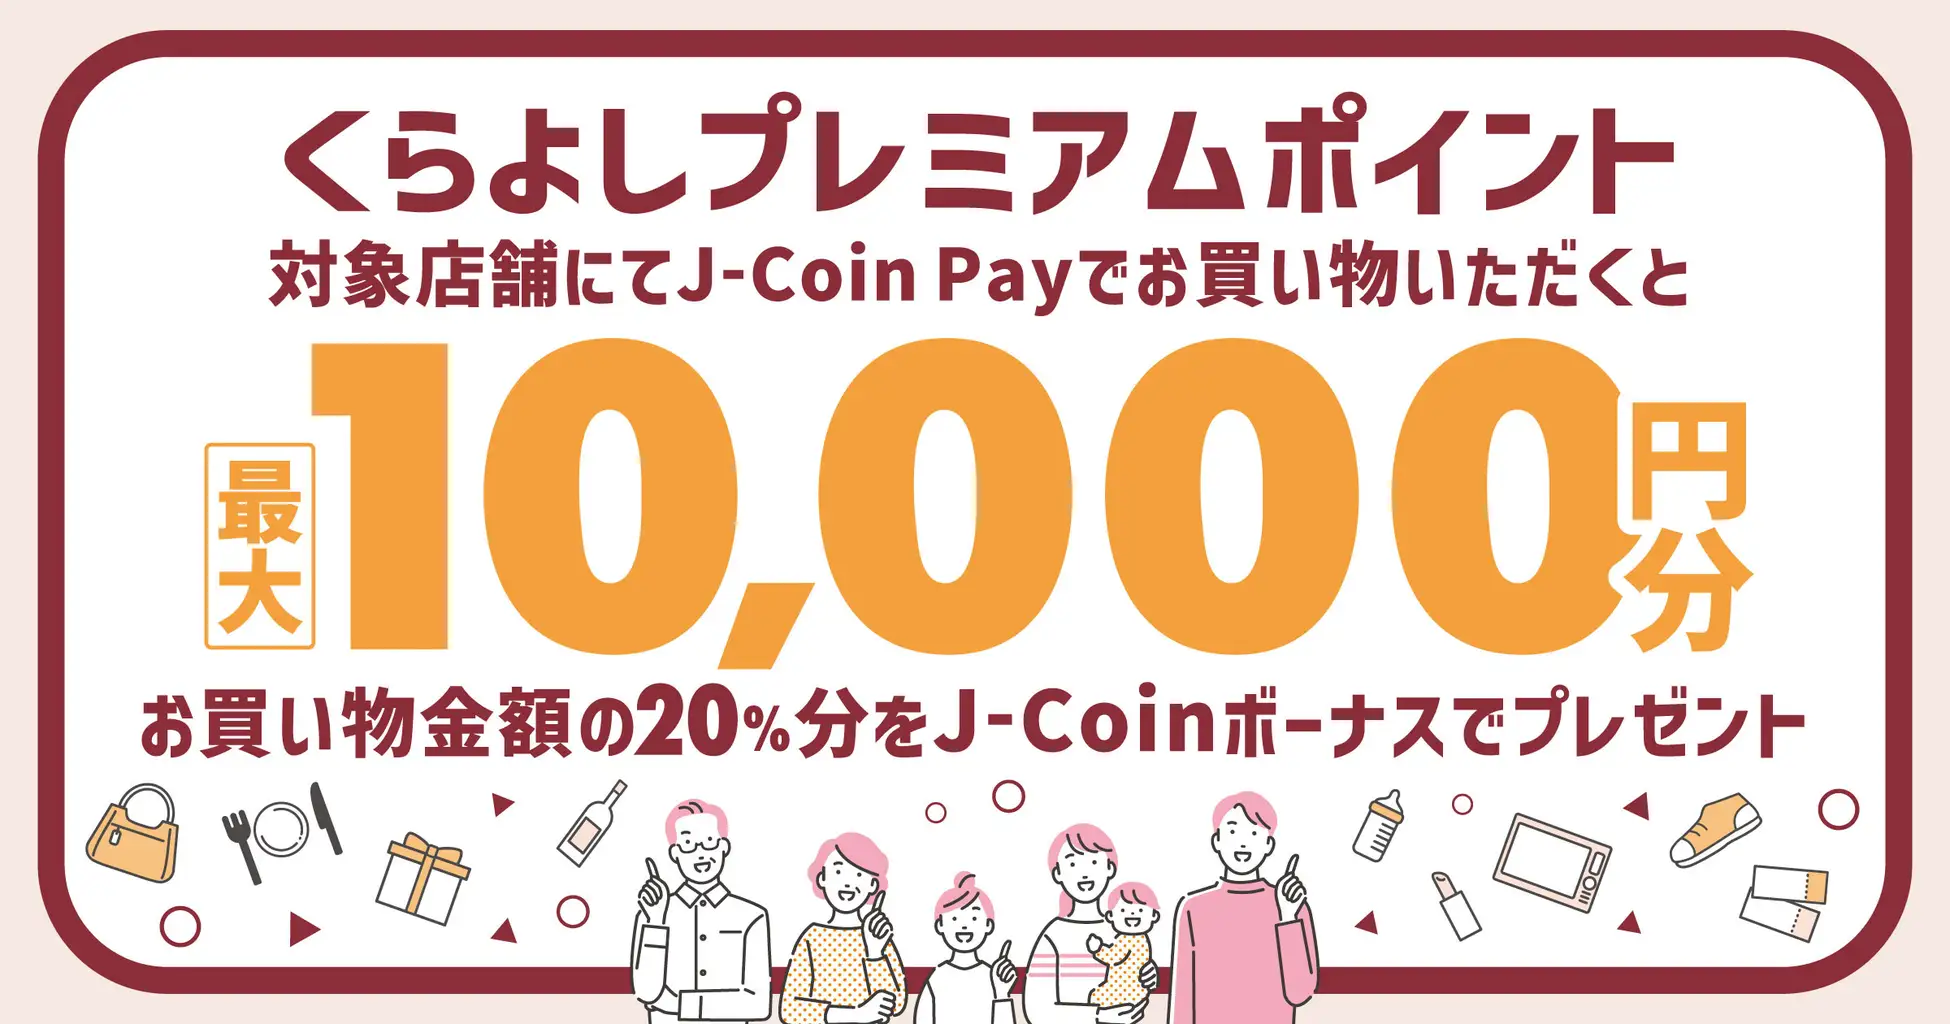 J-Coin Payと鳥取県倉吉市のコラボレーション